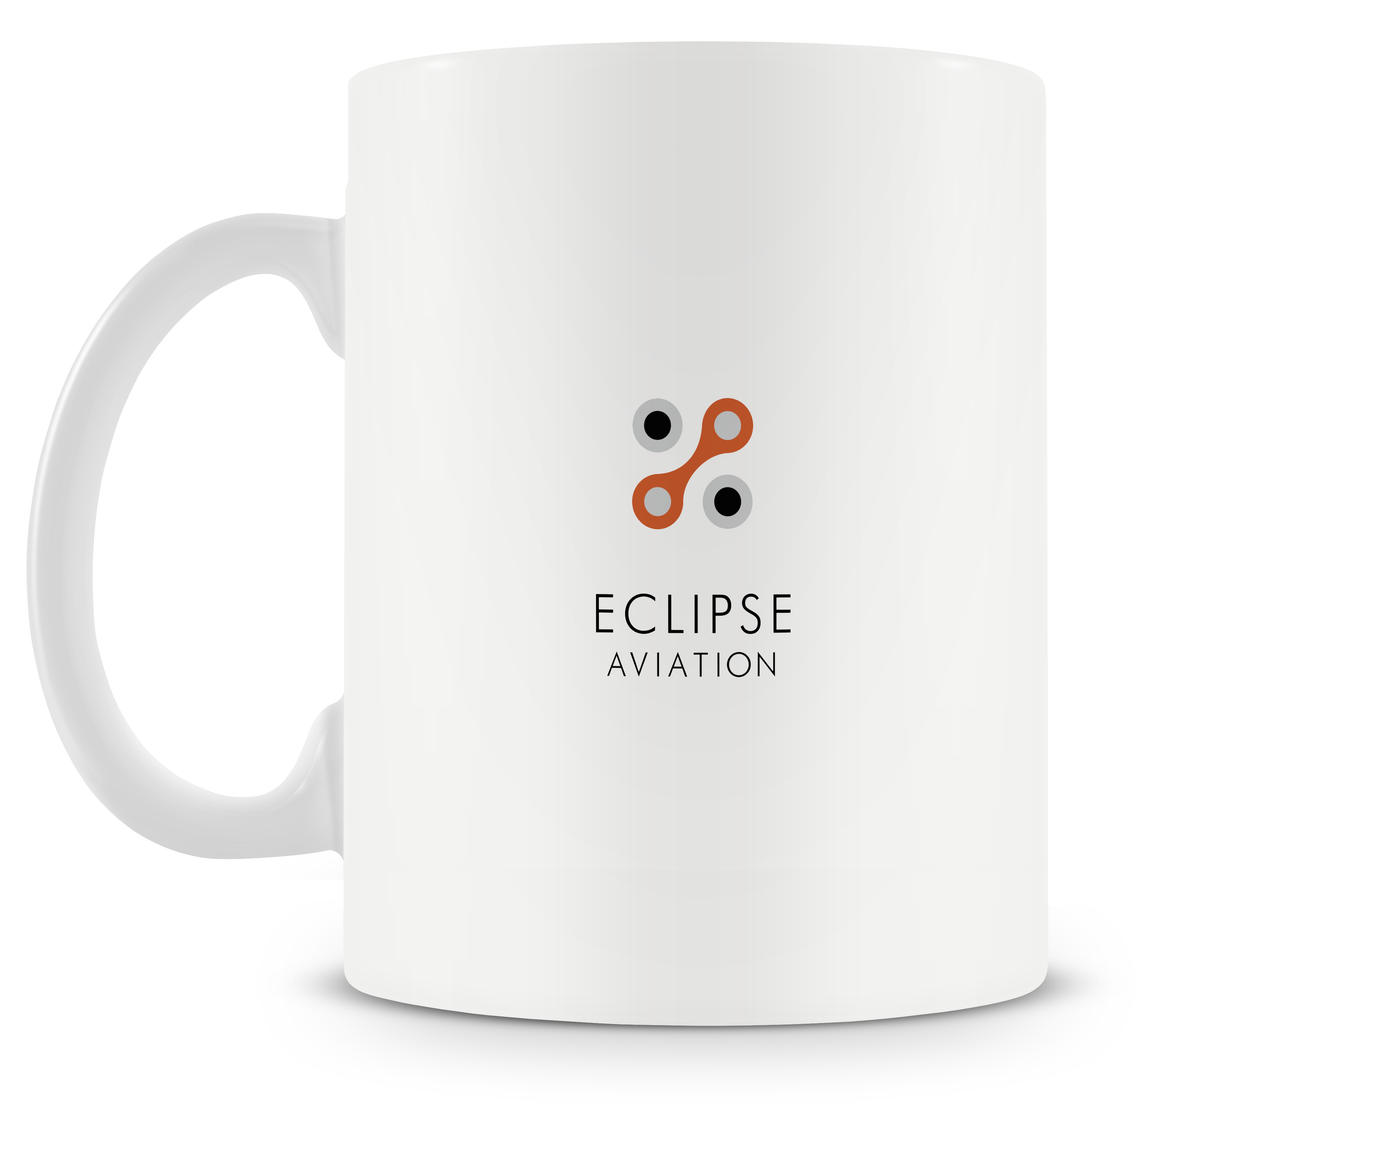 Eclipse 500 Mug - Aircraft Mugs